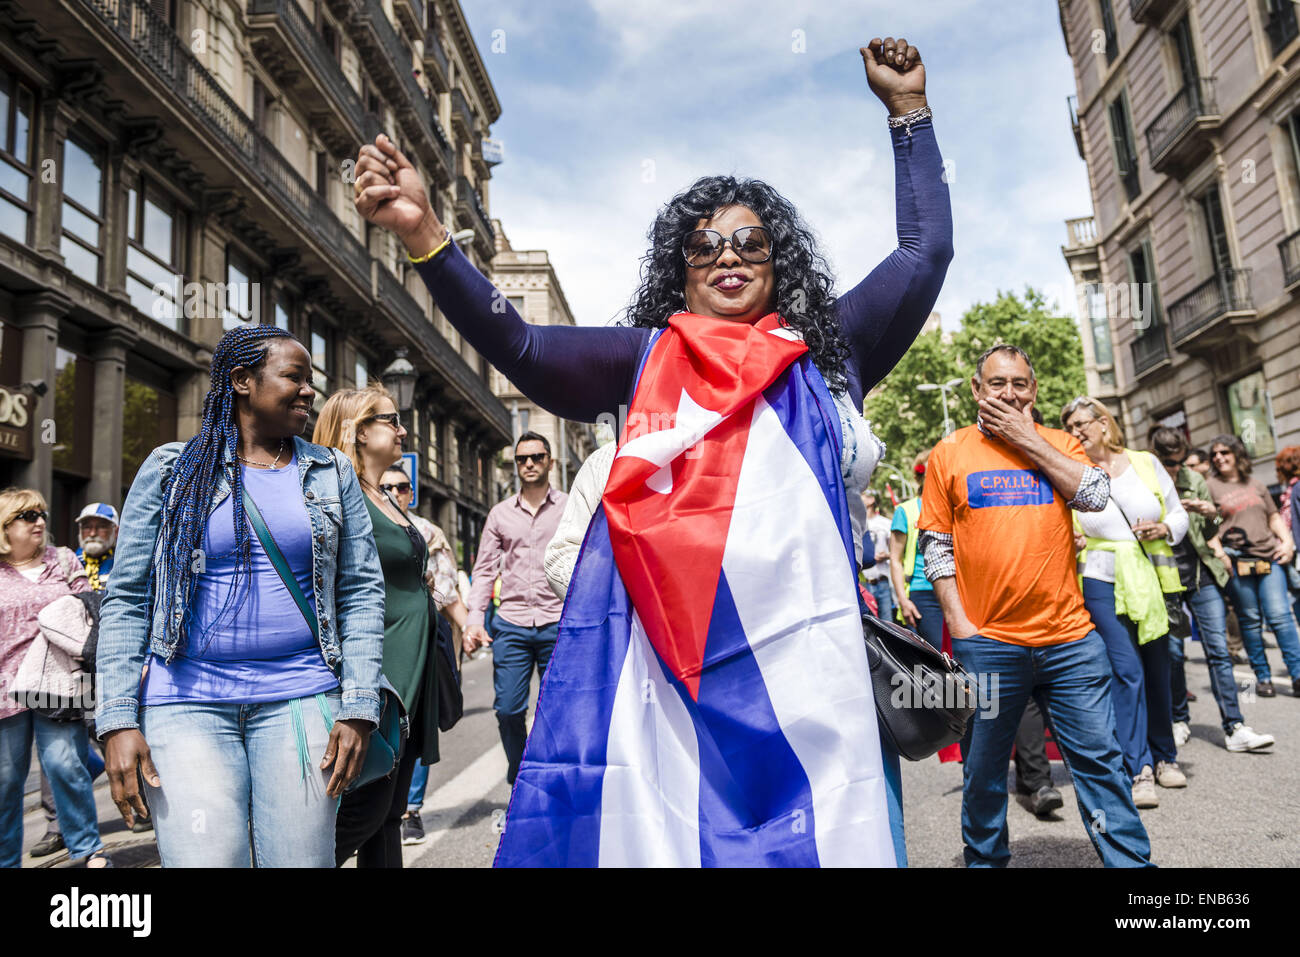 Mayo 1, 2015 - Barcelona, España - inmigrantes cubanos protesta austeridad económica durante una jornada laboral manifestación en Barcelona. (Crédito de la Imagen: © Matthias Oesterle/Cable/ZUMAPRESS.com) Zuma. Foto de stock